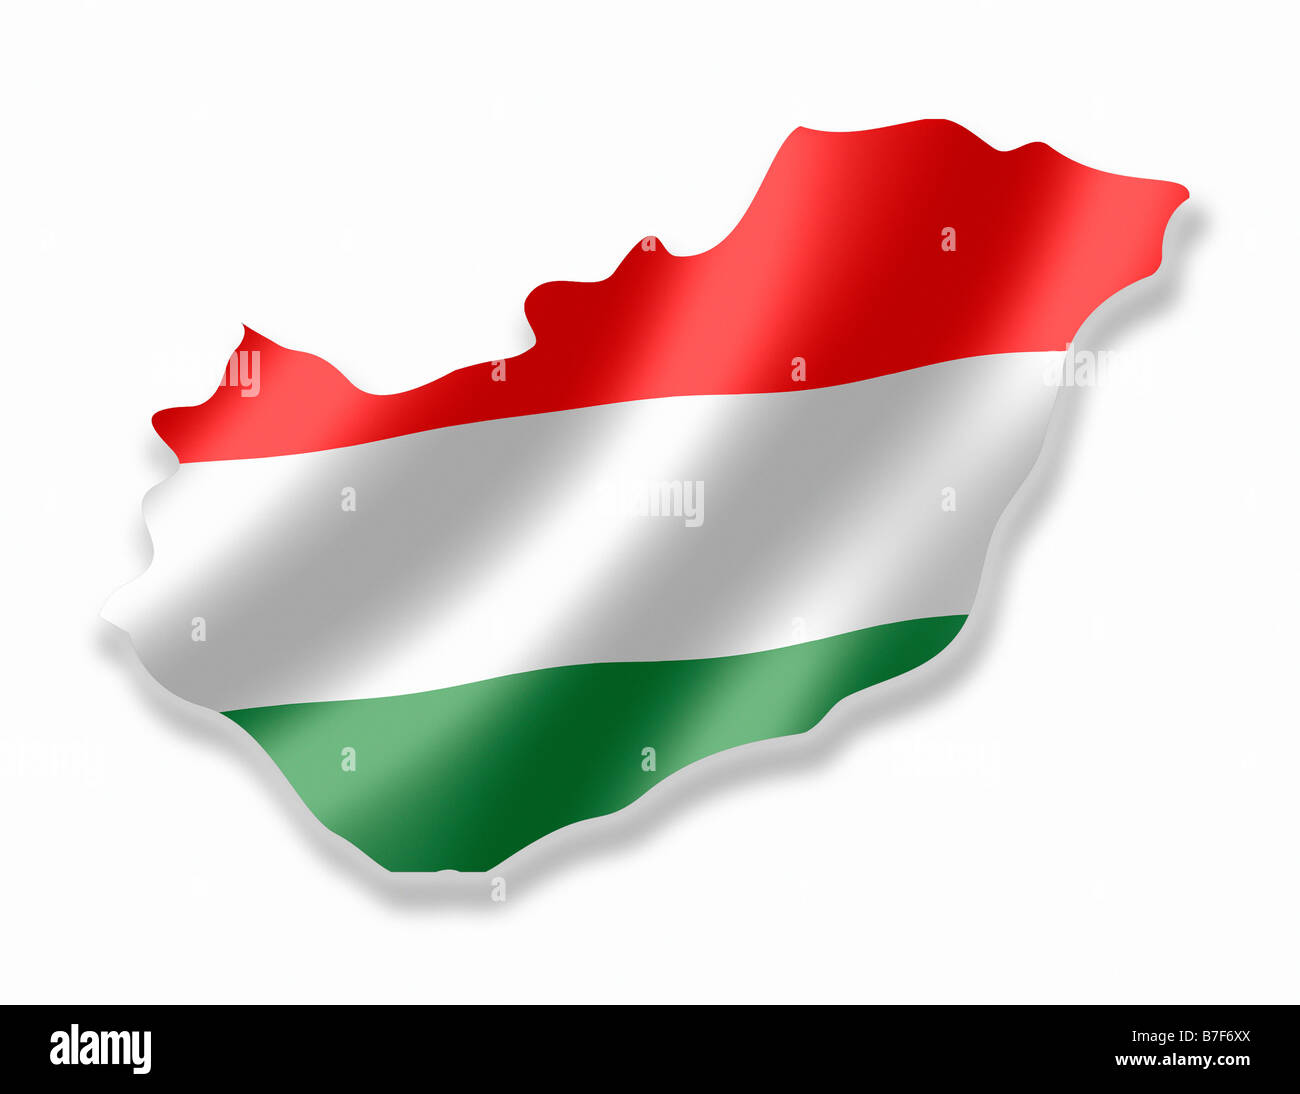 Ungheria Paese Ungherese Mappa delineare con bandiera nazionale all'interno Foto Stock